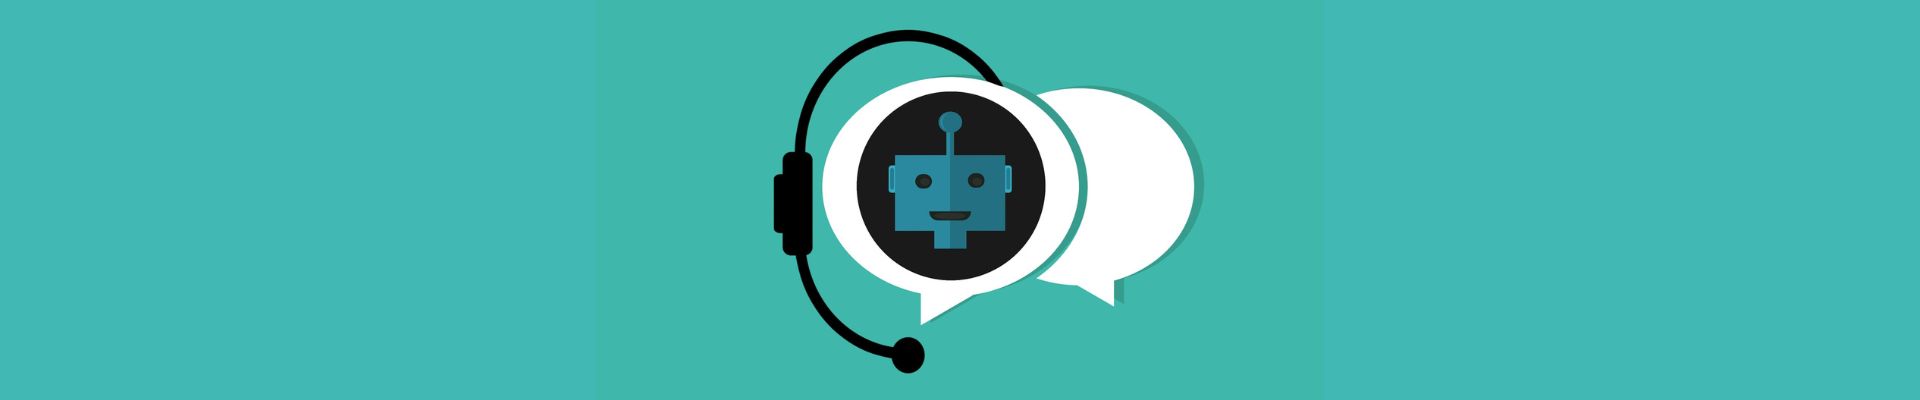 Ubots Insights: ferramenta é focada na análise de conversas entre marcas e clientes